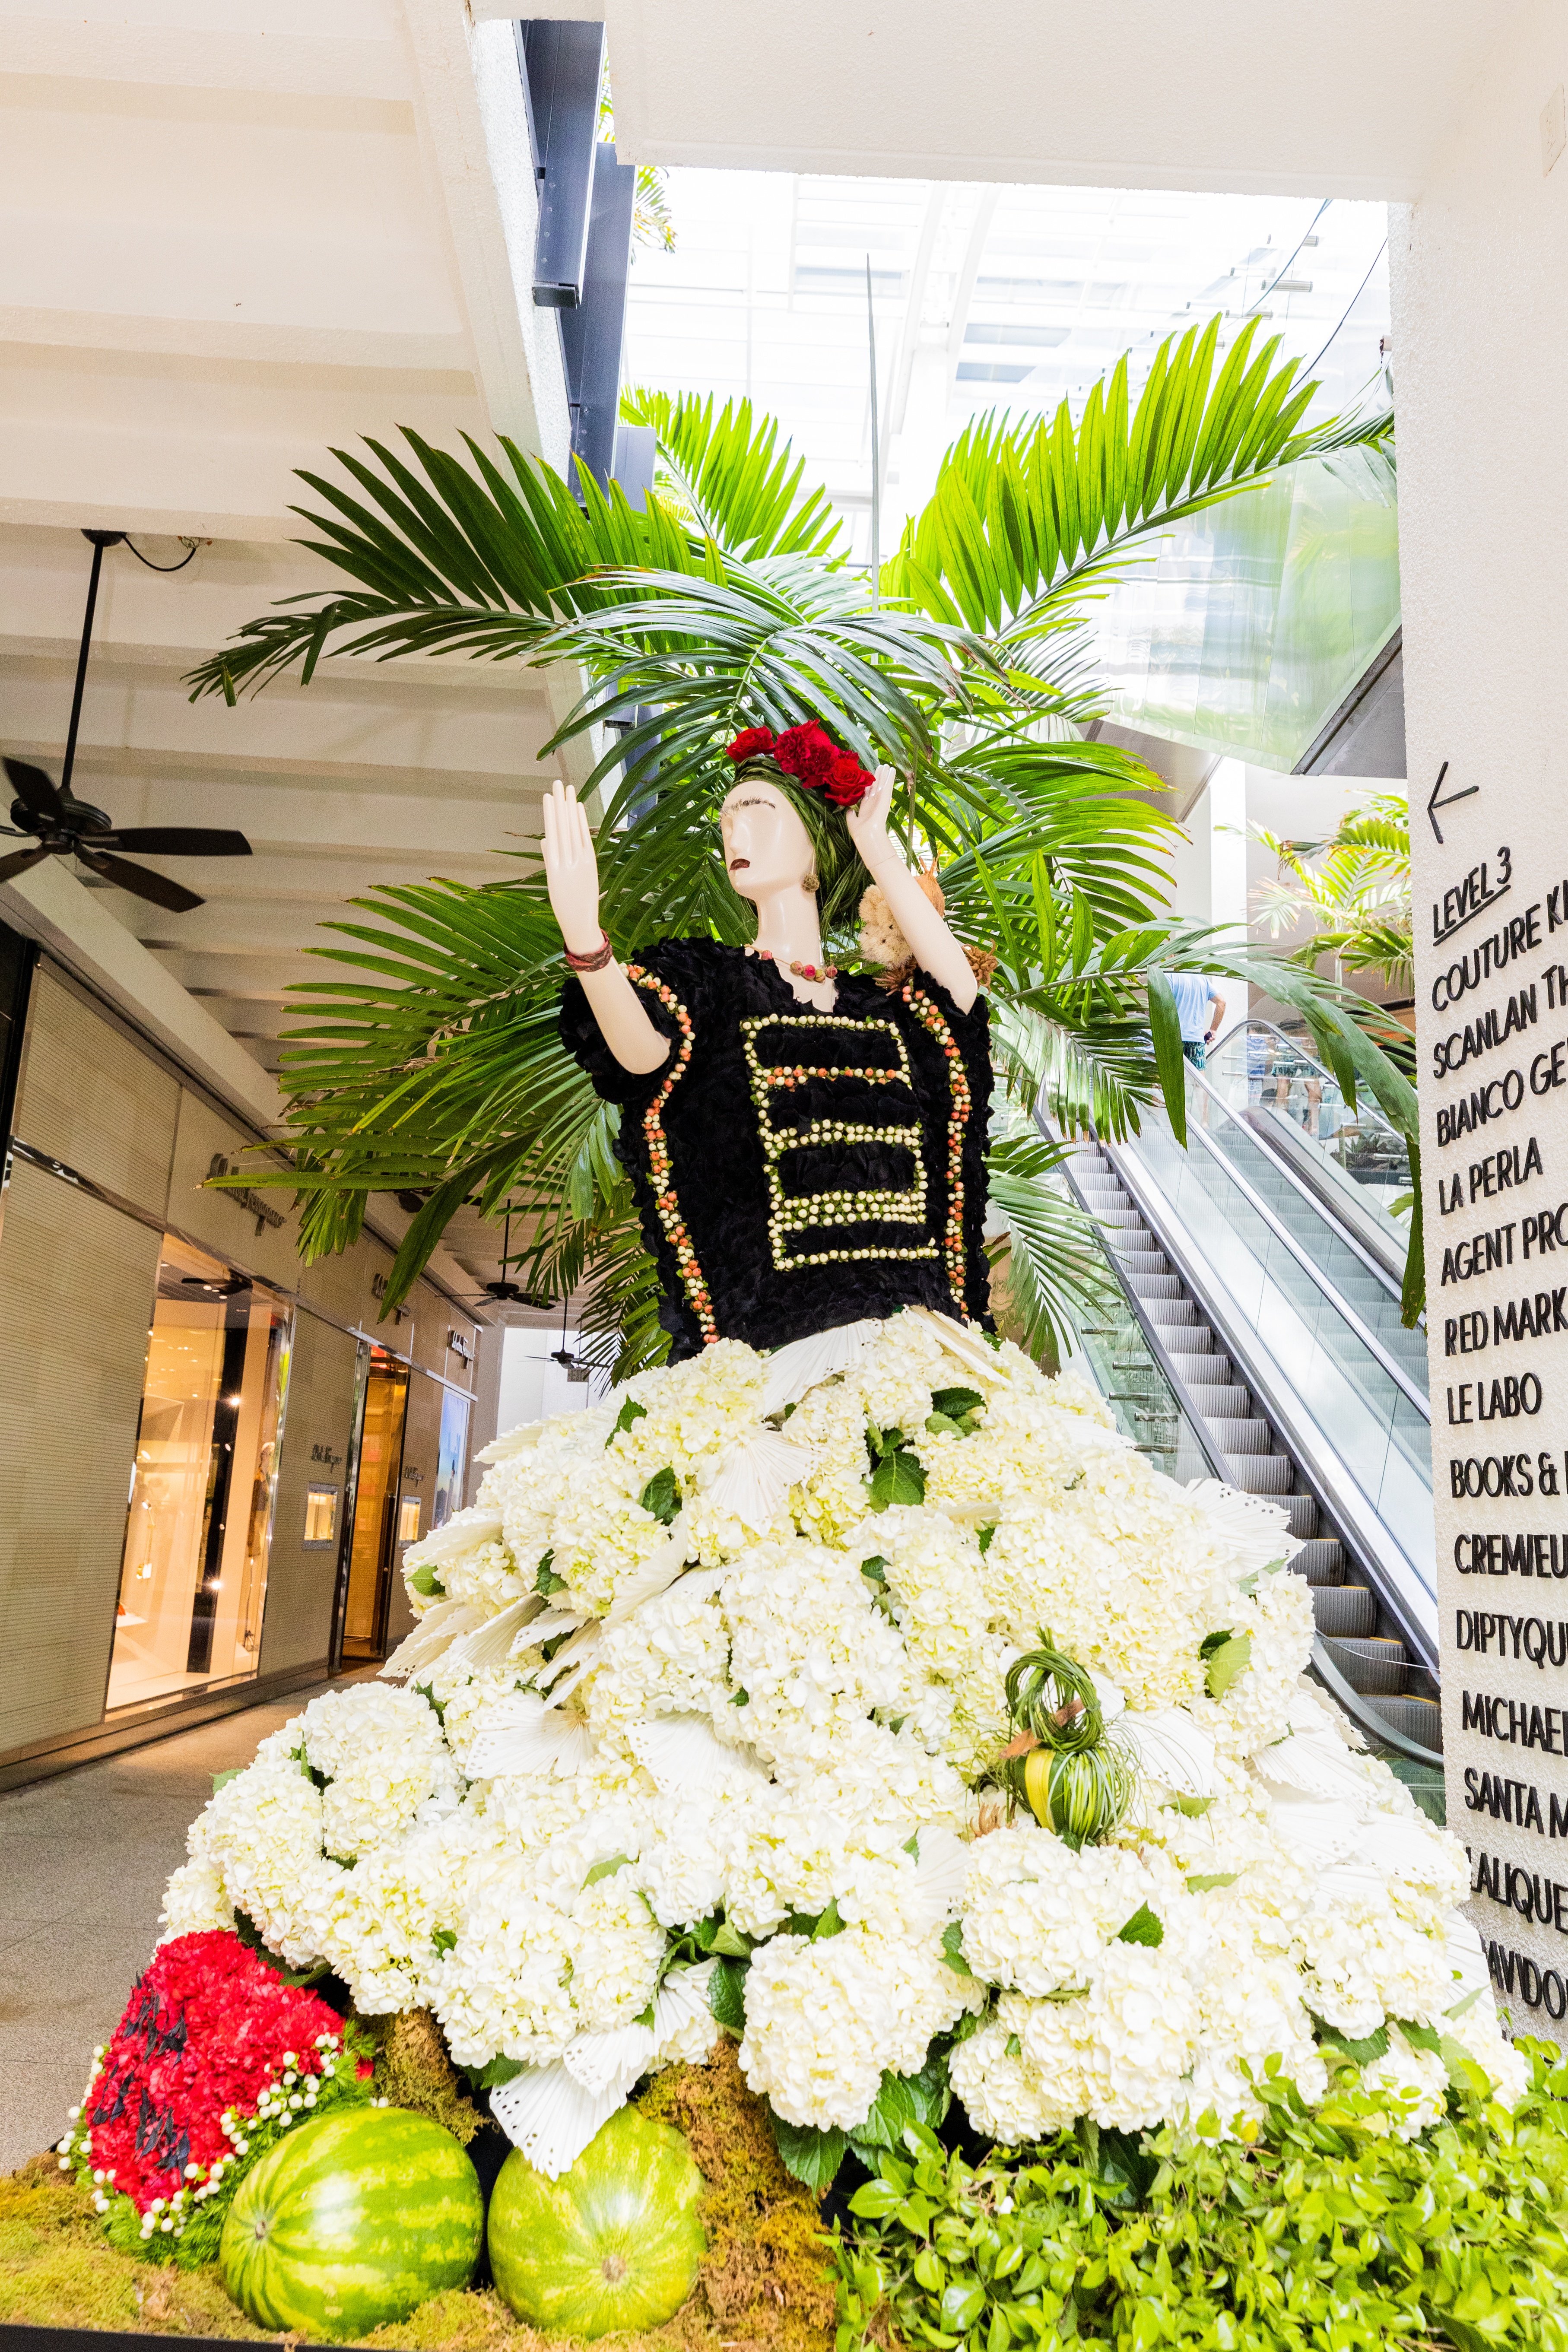 Floral mannequin inspired by Frida Kahlo